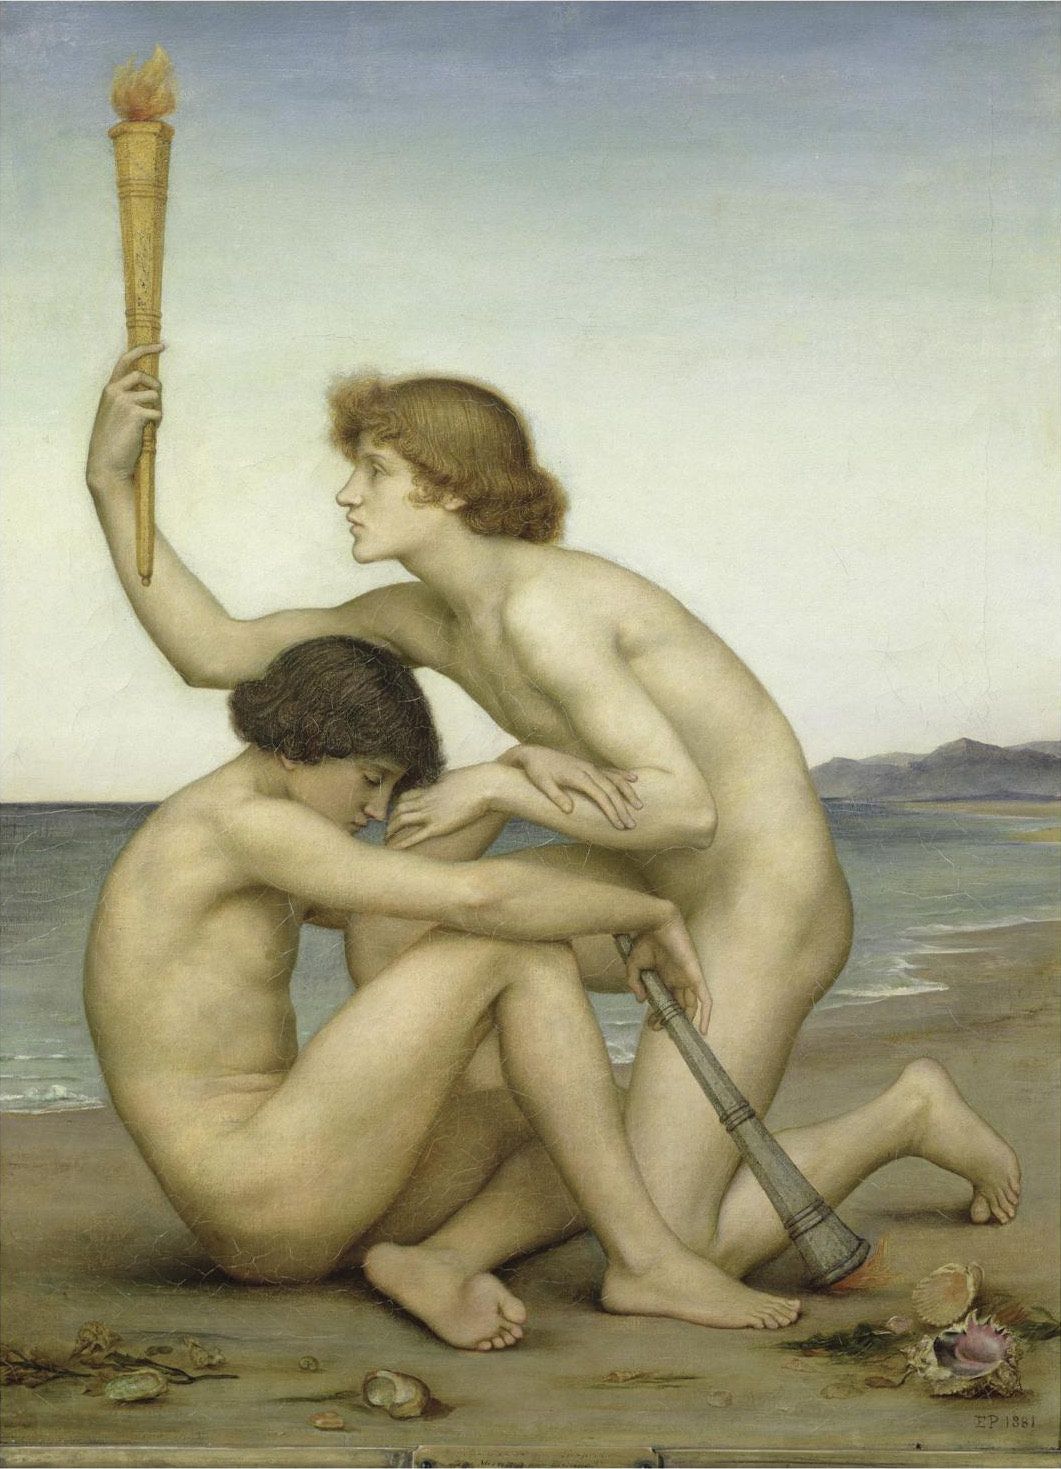 Heósforo y Héspero, la estrella del amanecer y de la tarde representadas en una pintura de Evelyn de Morgan.